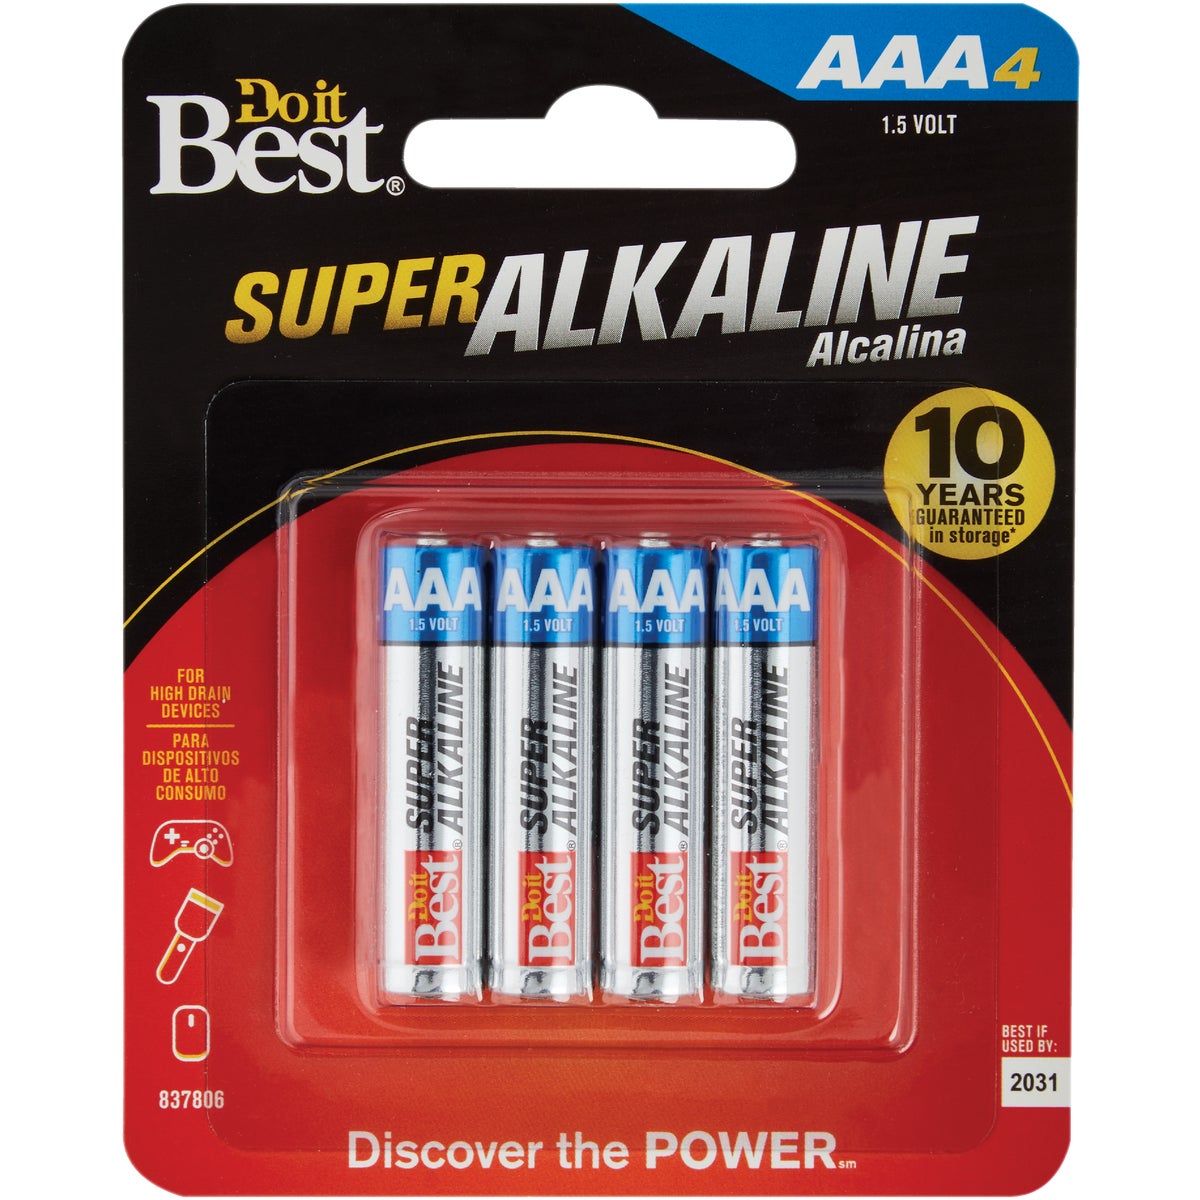 Item 837806, Top-quality AAA super alkaline batteries.